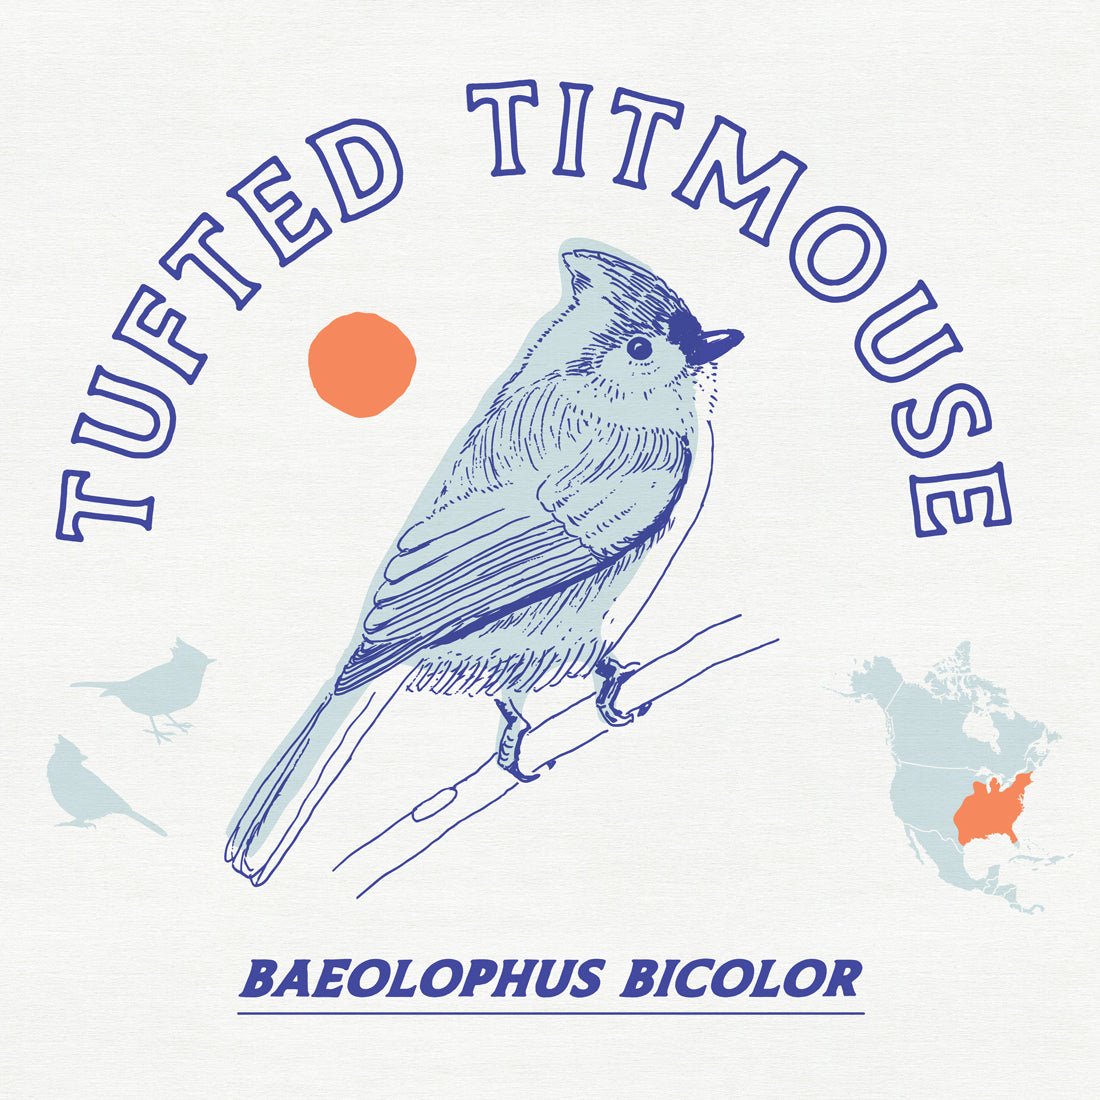 Tufted Titmouse: A Backyard Bird Favorite - Bird Collective